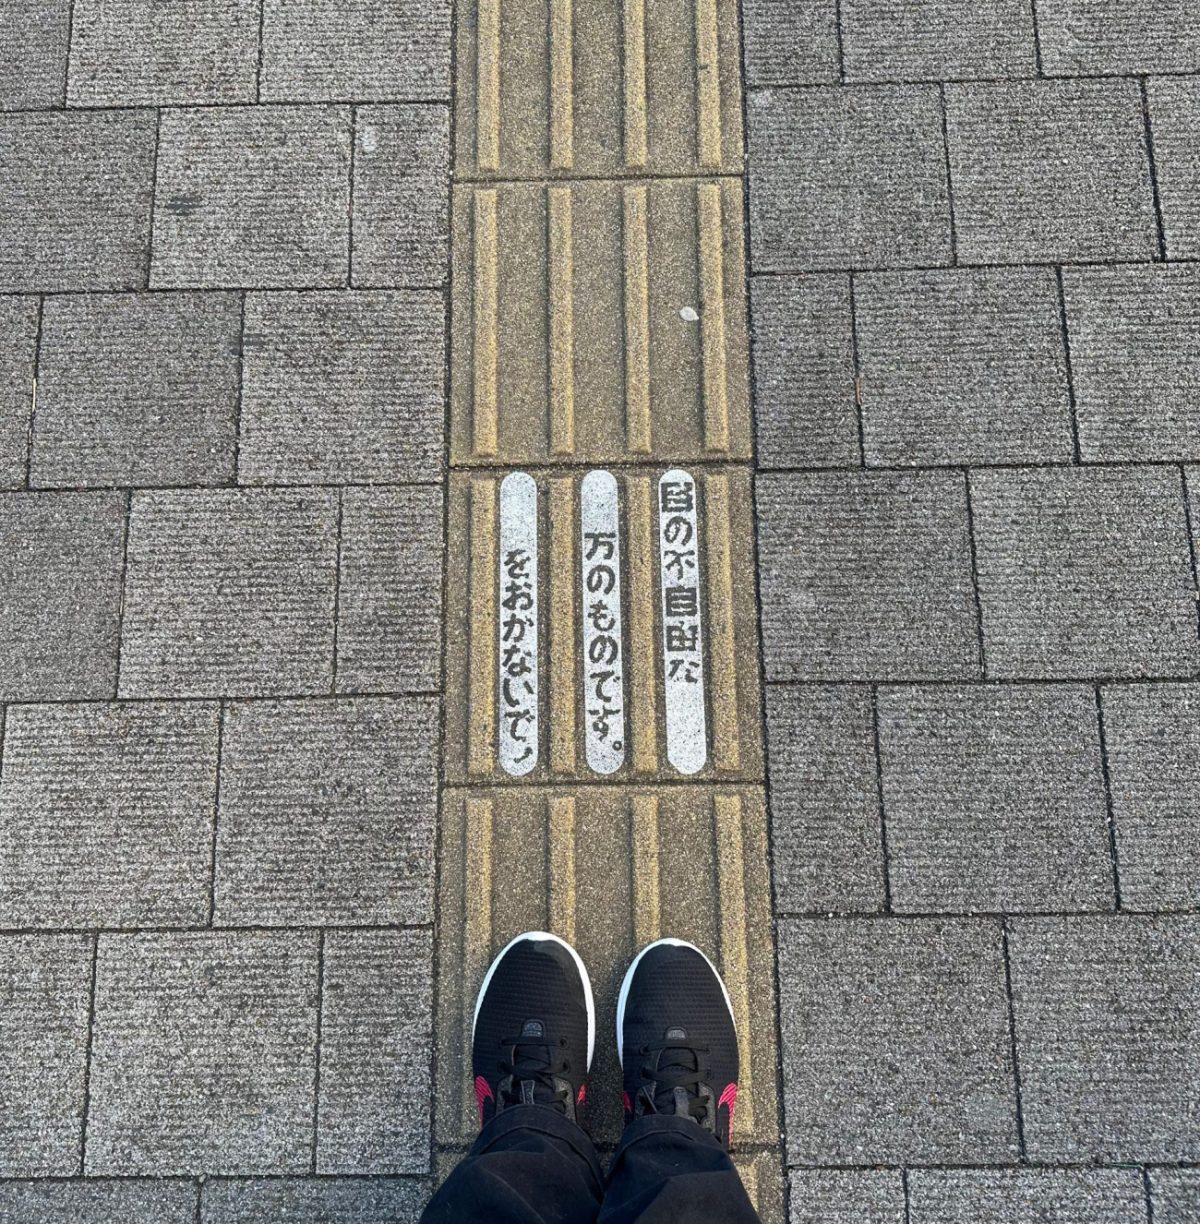 Mes baskets noires à pied joint sur une bande podotactile verticale et une inscription japonaise (j'attends la traduction)